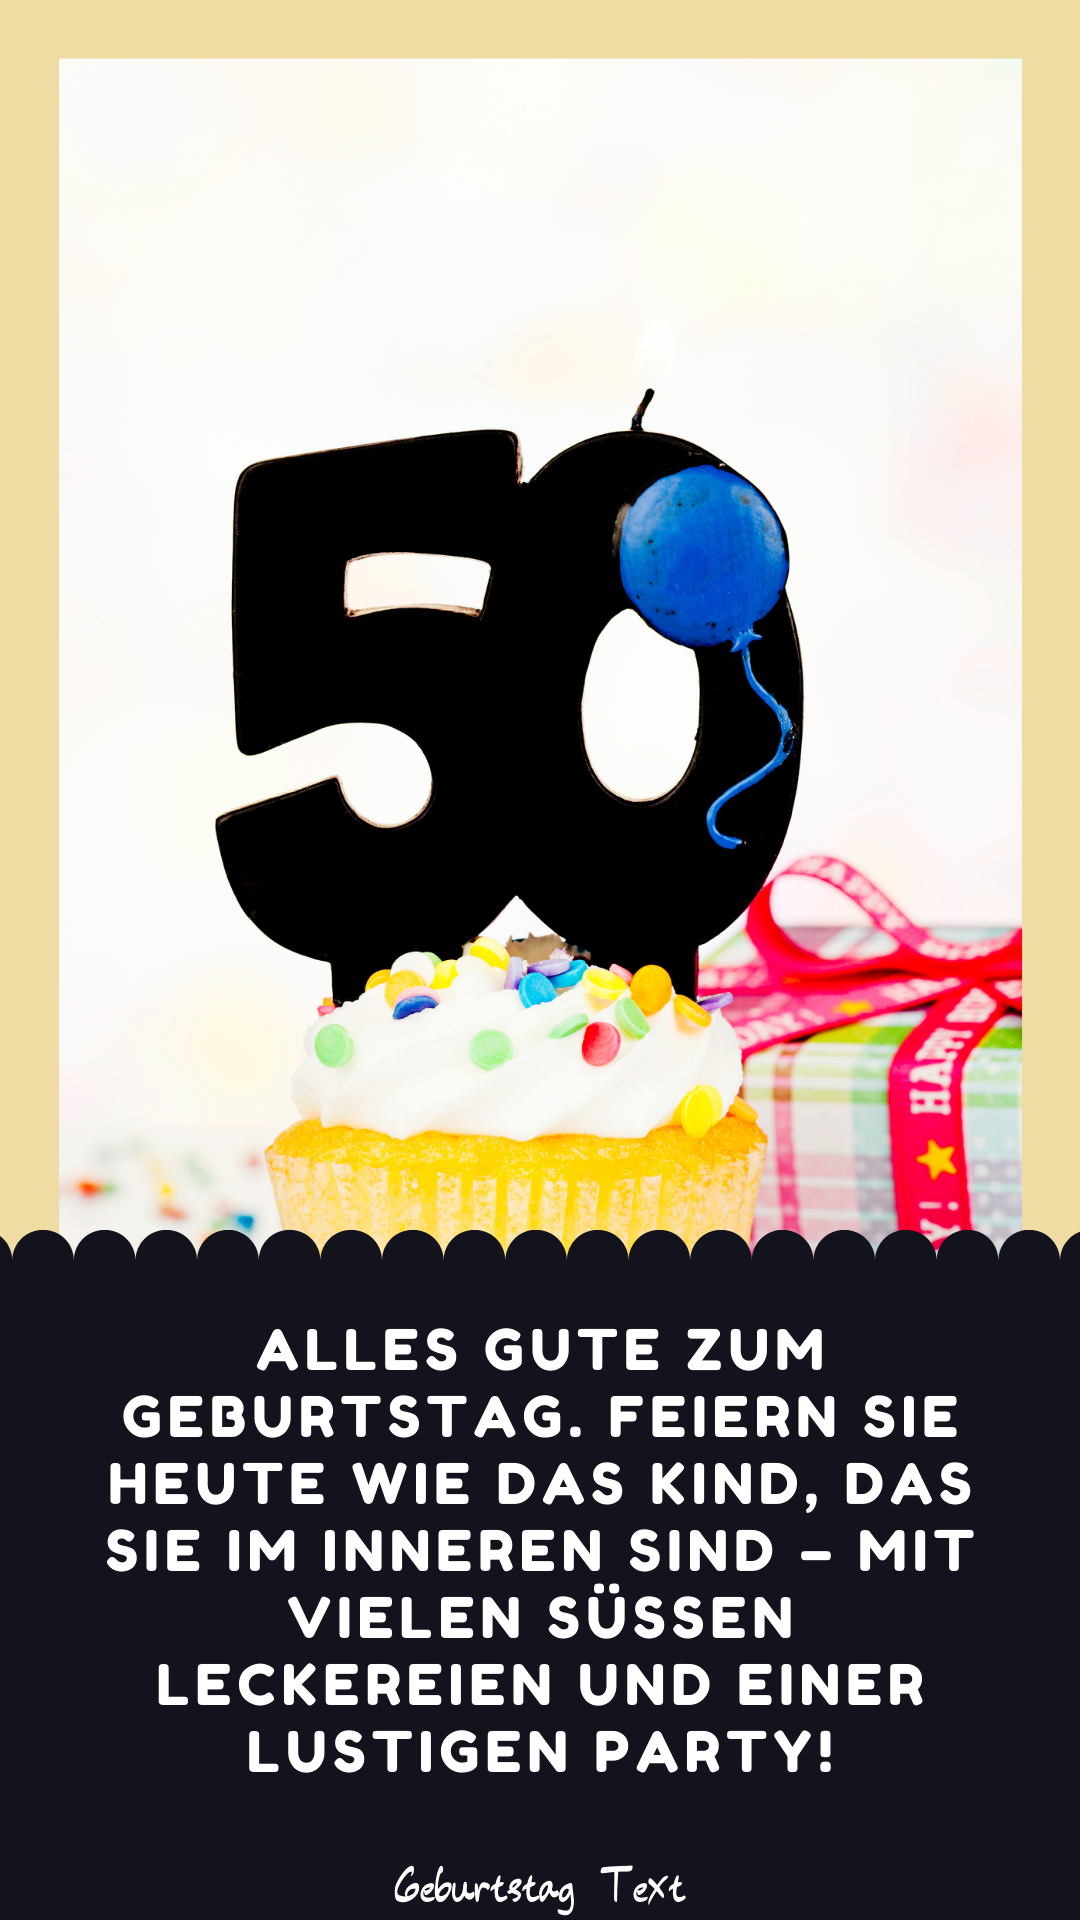 ᐅ 999+ Glückwünsche Zum 50 Geburtstag - Geburtstag Text